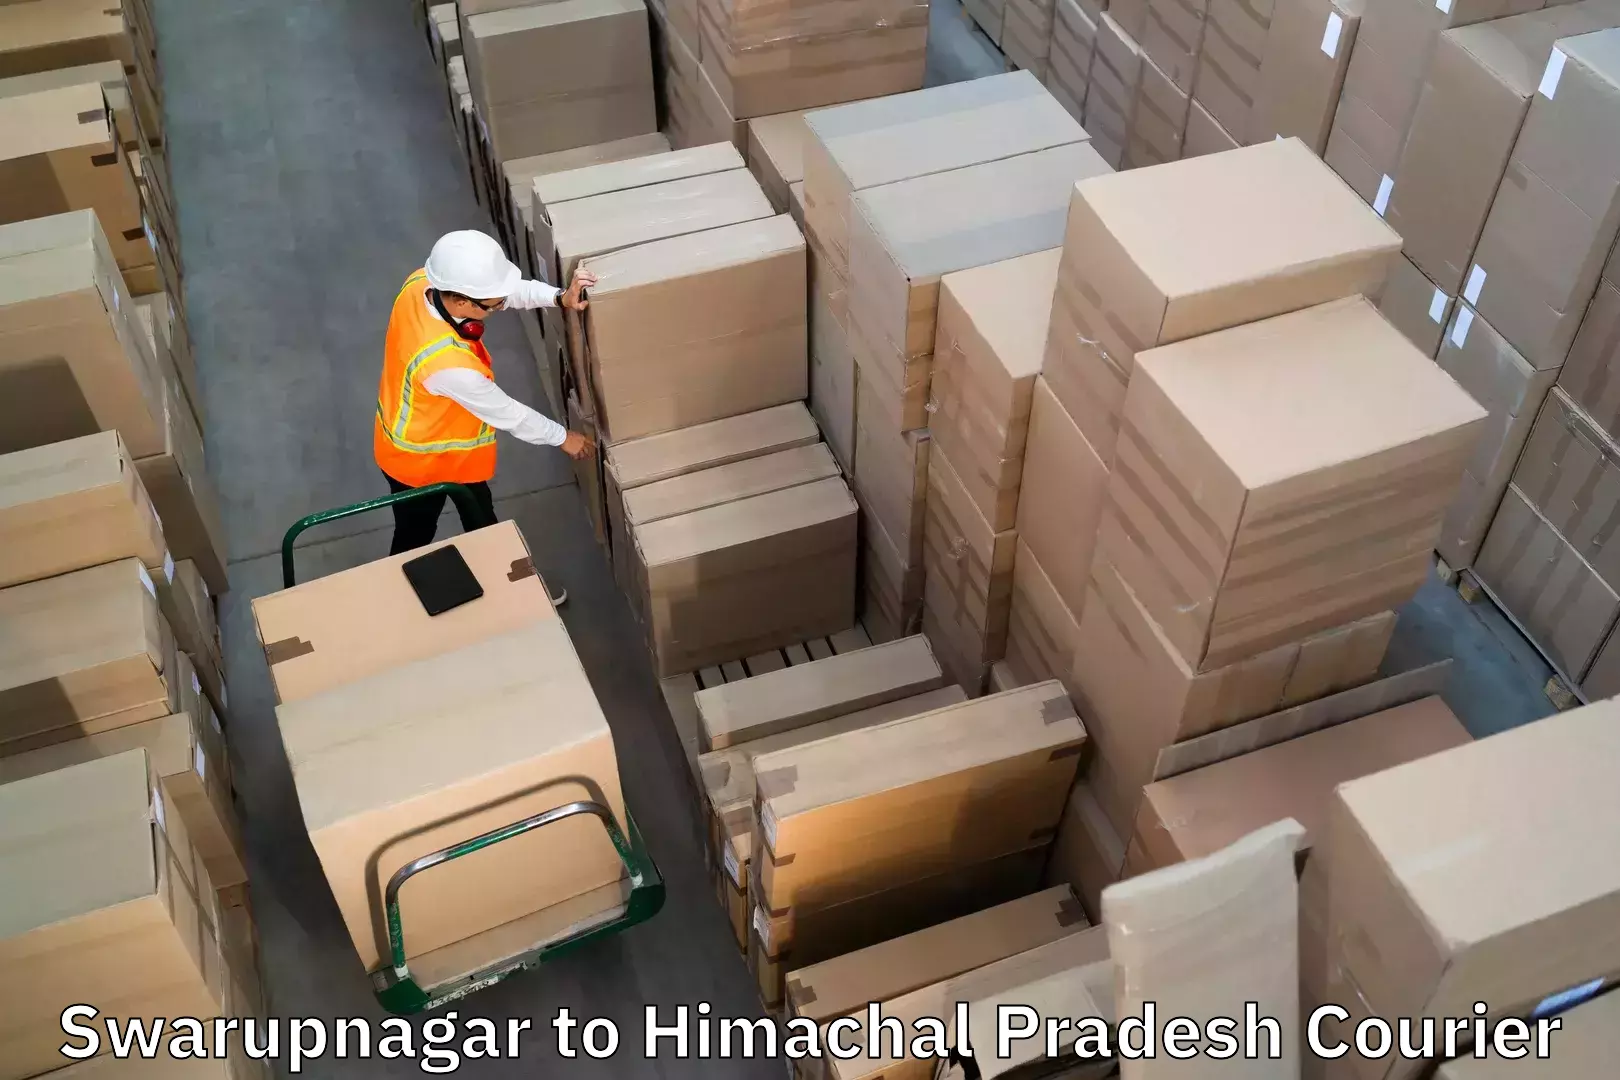 Luggage shipping planner in Swarupnagar to Joginder Nagar